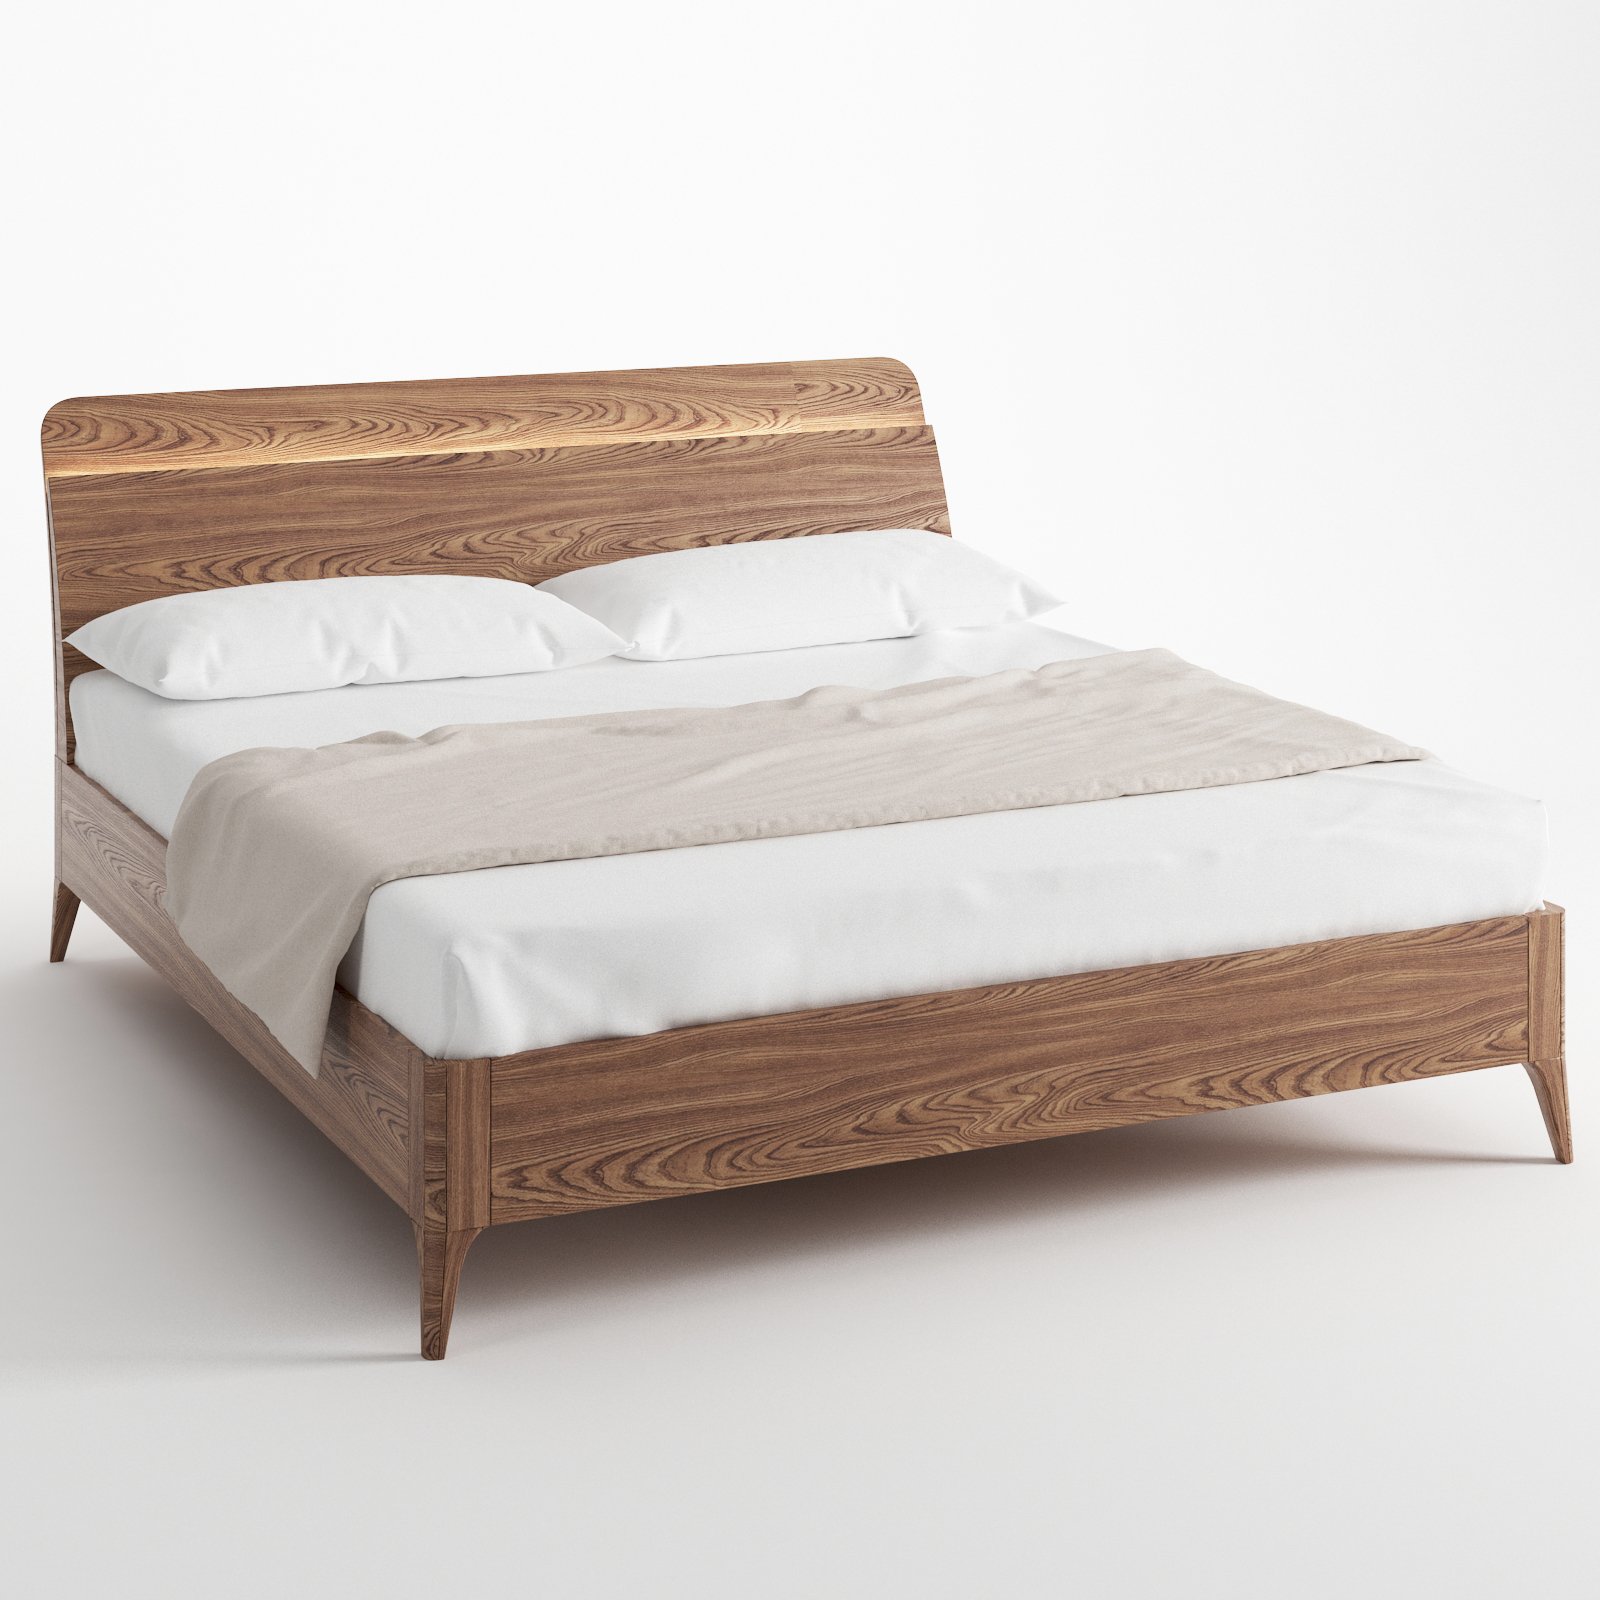 Кровать SDK Home Toffee 160/ 180 x200, цвет: браун